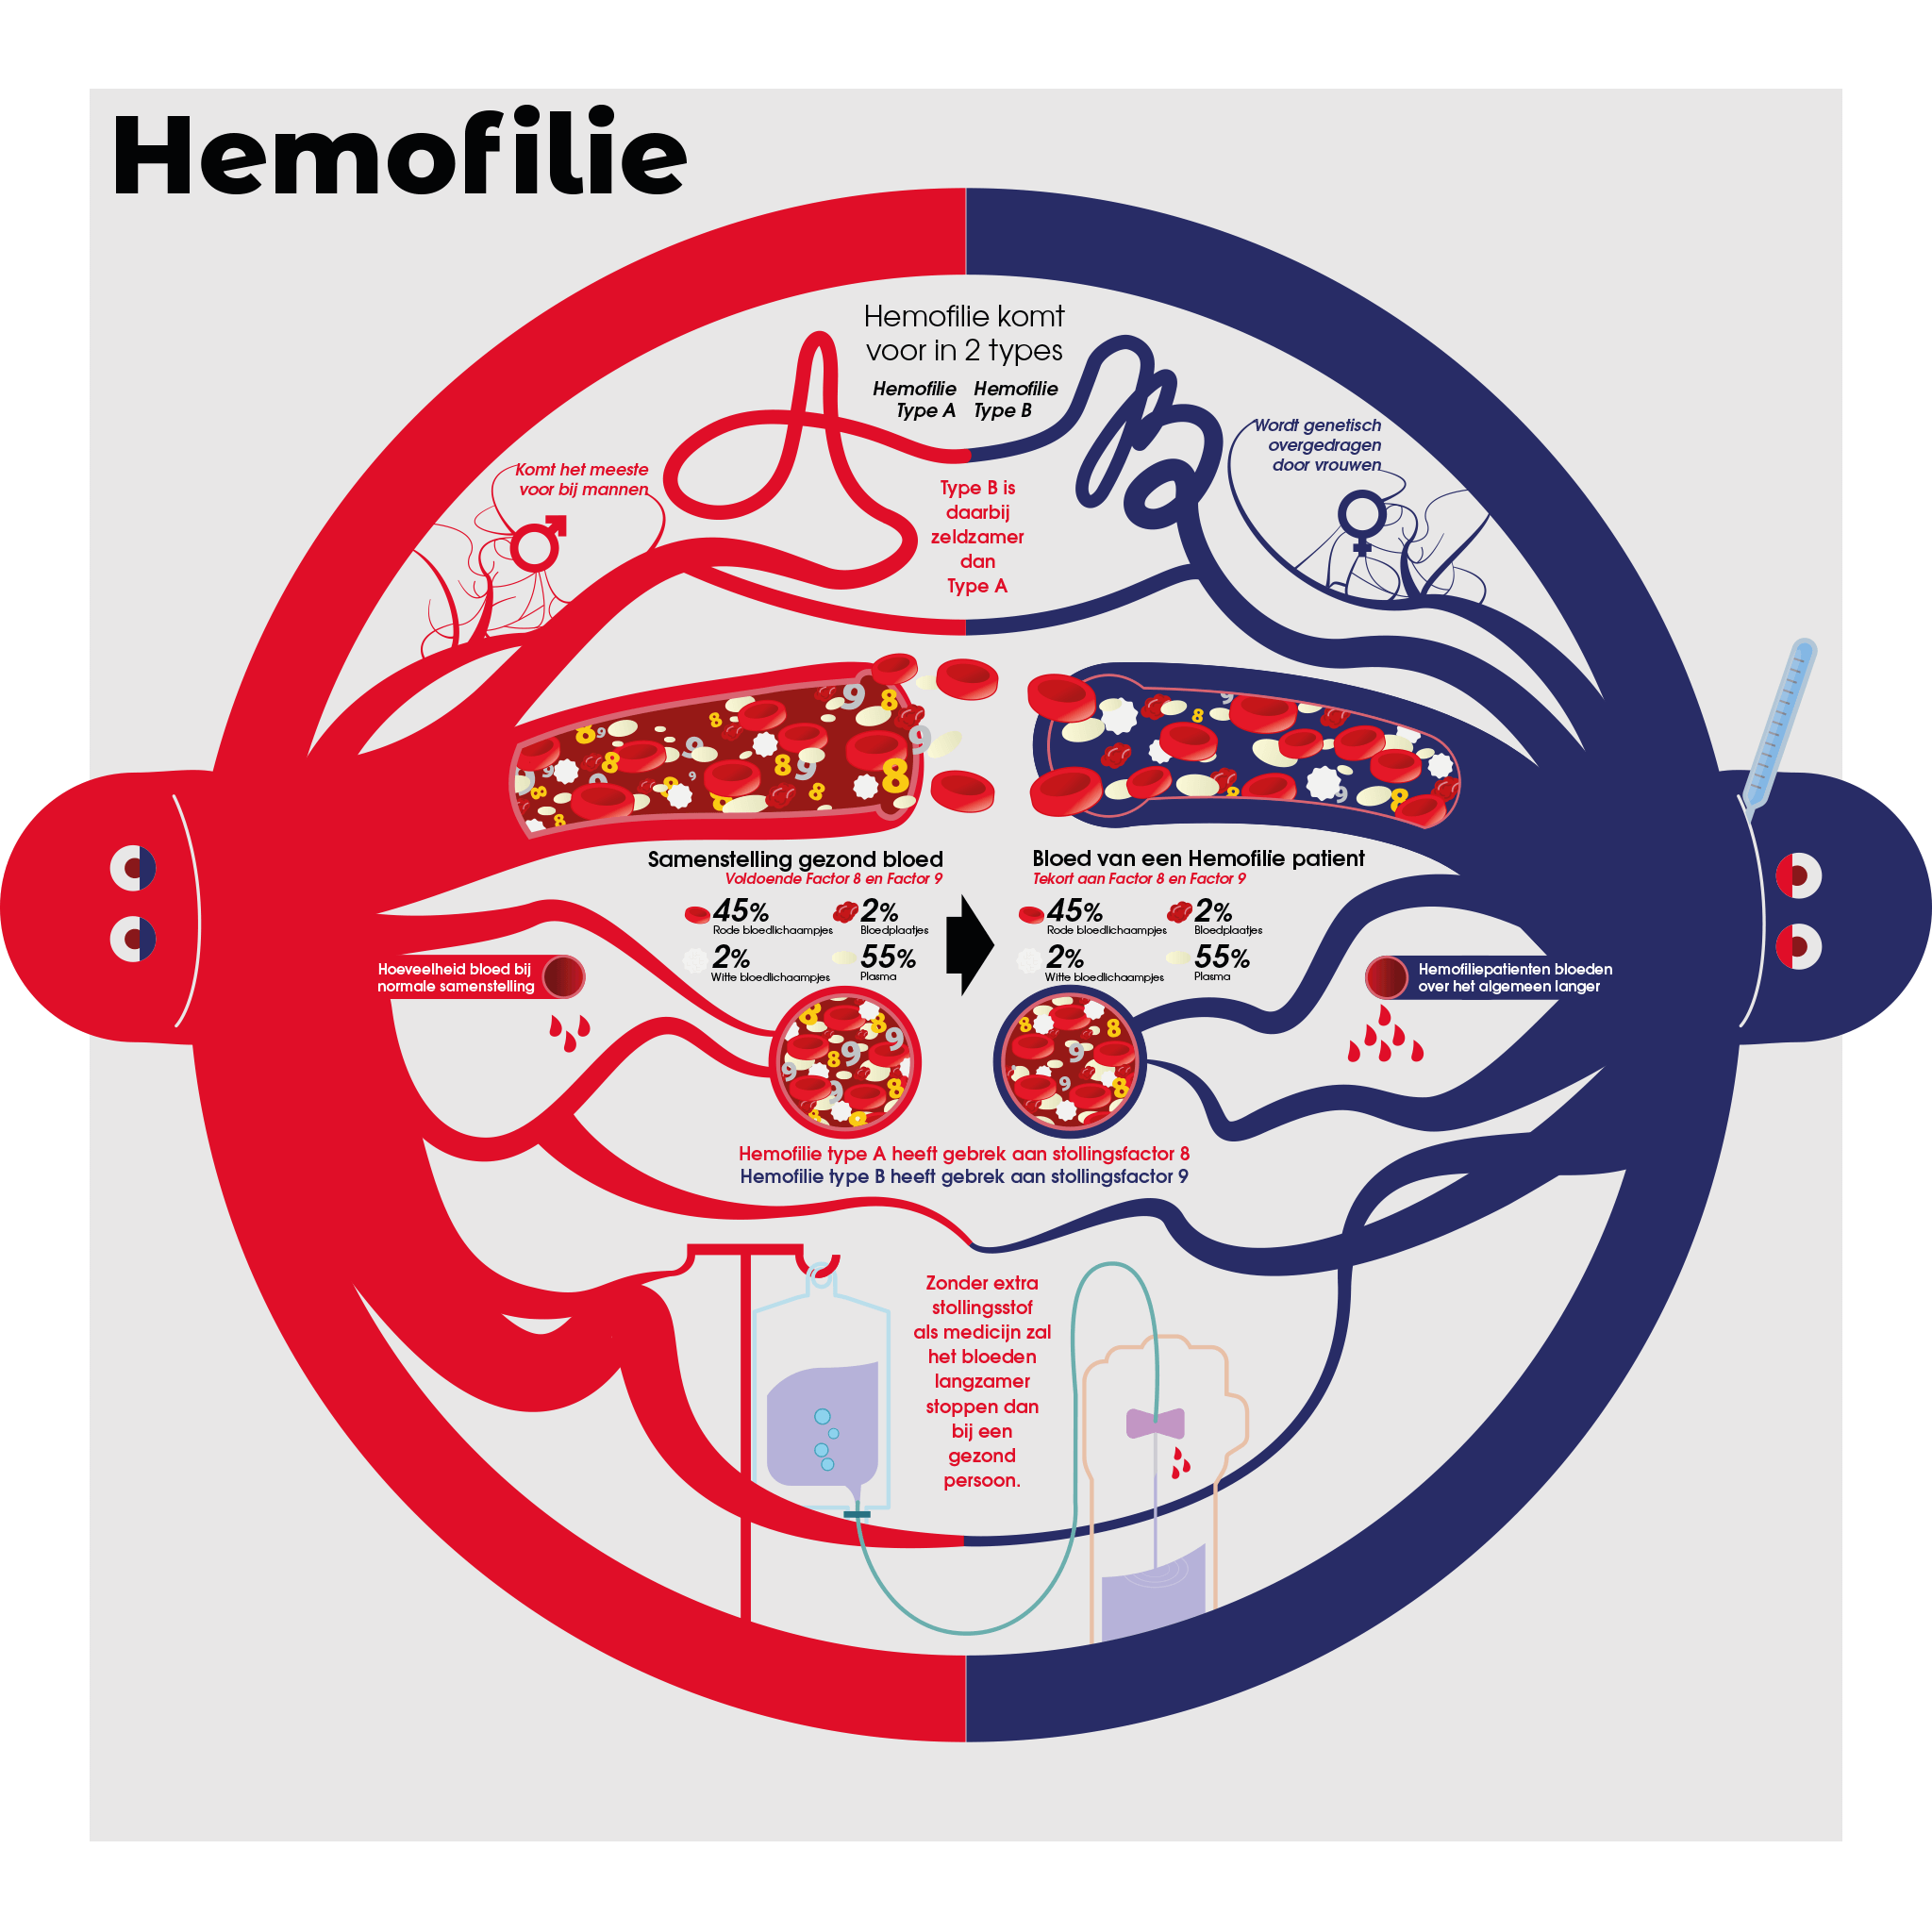 Illustrator Jacco de Jager maakte deze infographic over hemofilie. Zijn vader, Kees, had hemofilie en zodoende maakte hij deze illustratie. Het geeft een duidelijke weergave van de aandoening. We gaan de infographic ook opnemen op onze website.